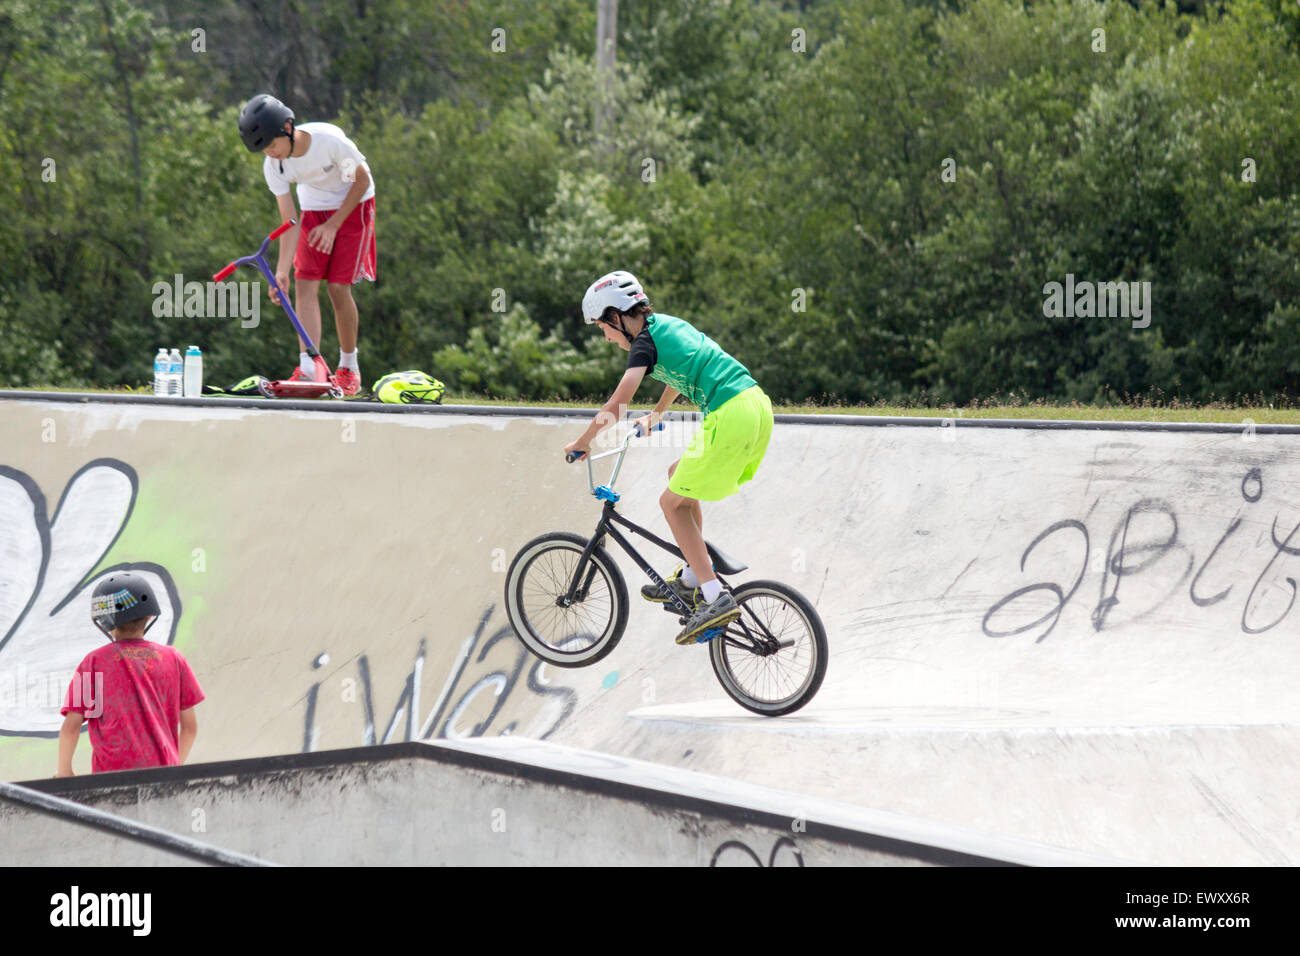 Jeune adolescent tombé sur une bande sur sa bicyclette à un skate park de Cannington, Ontario Banque D'Images